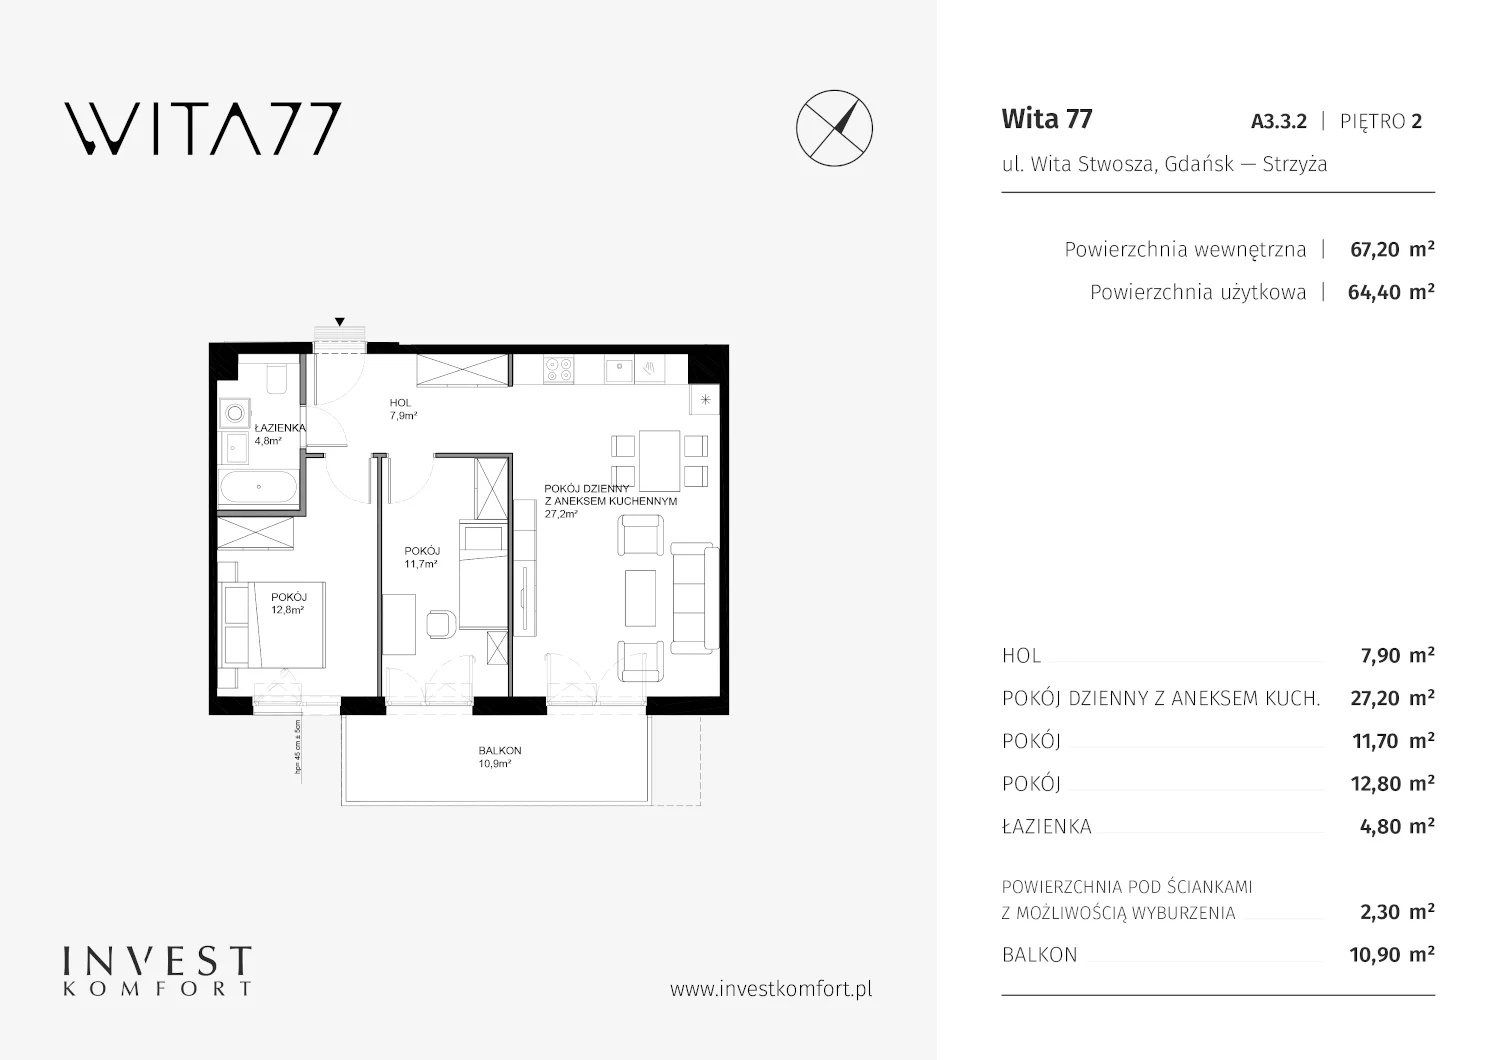 Apartament 67,20 m², piętro 2, oferta nr A3.3.2, Wita 77, Gdańsk, Strzyża, ul. Wita Stwosza 77